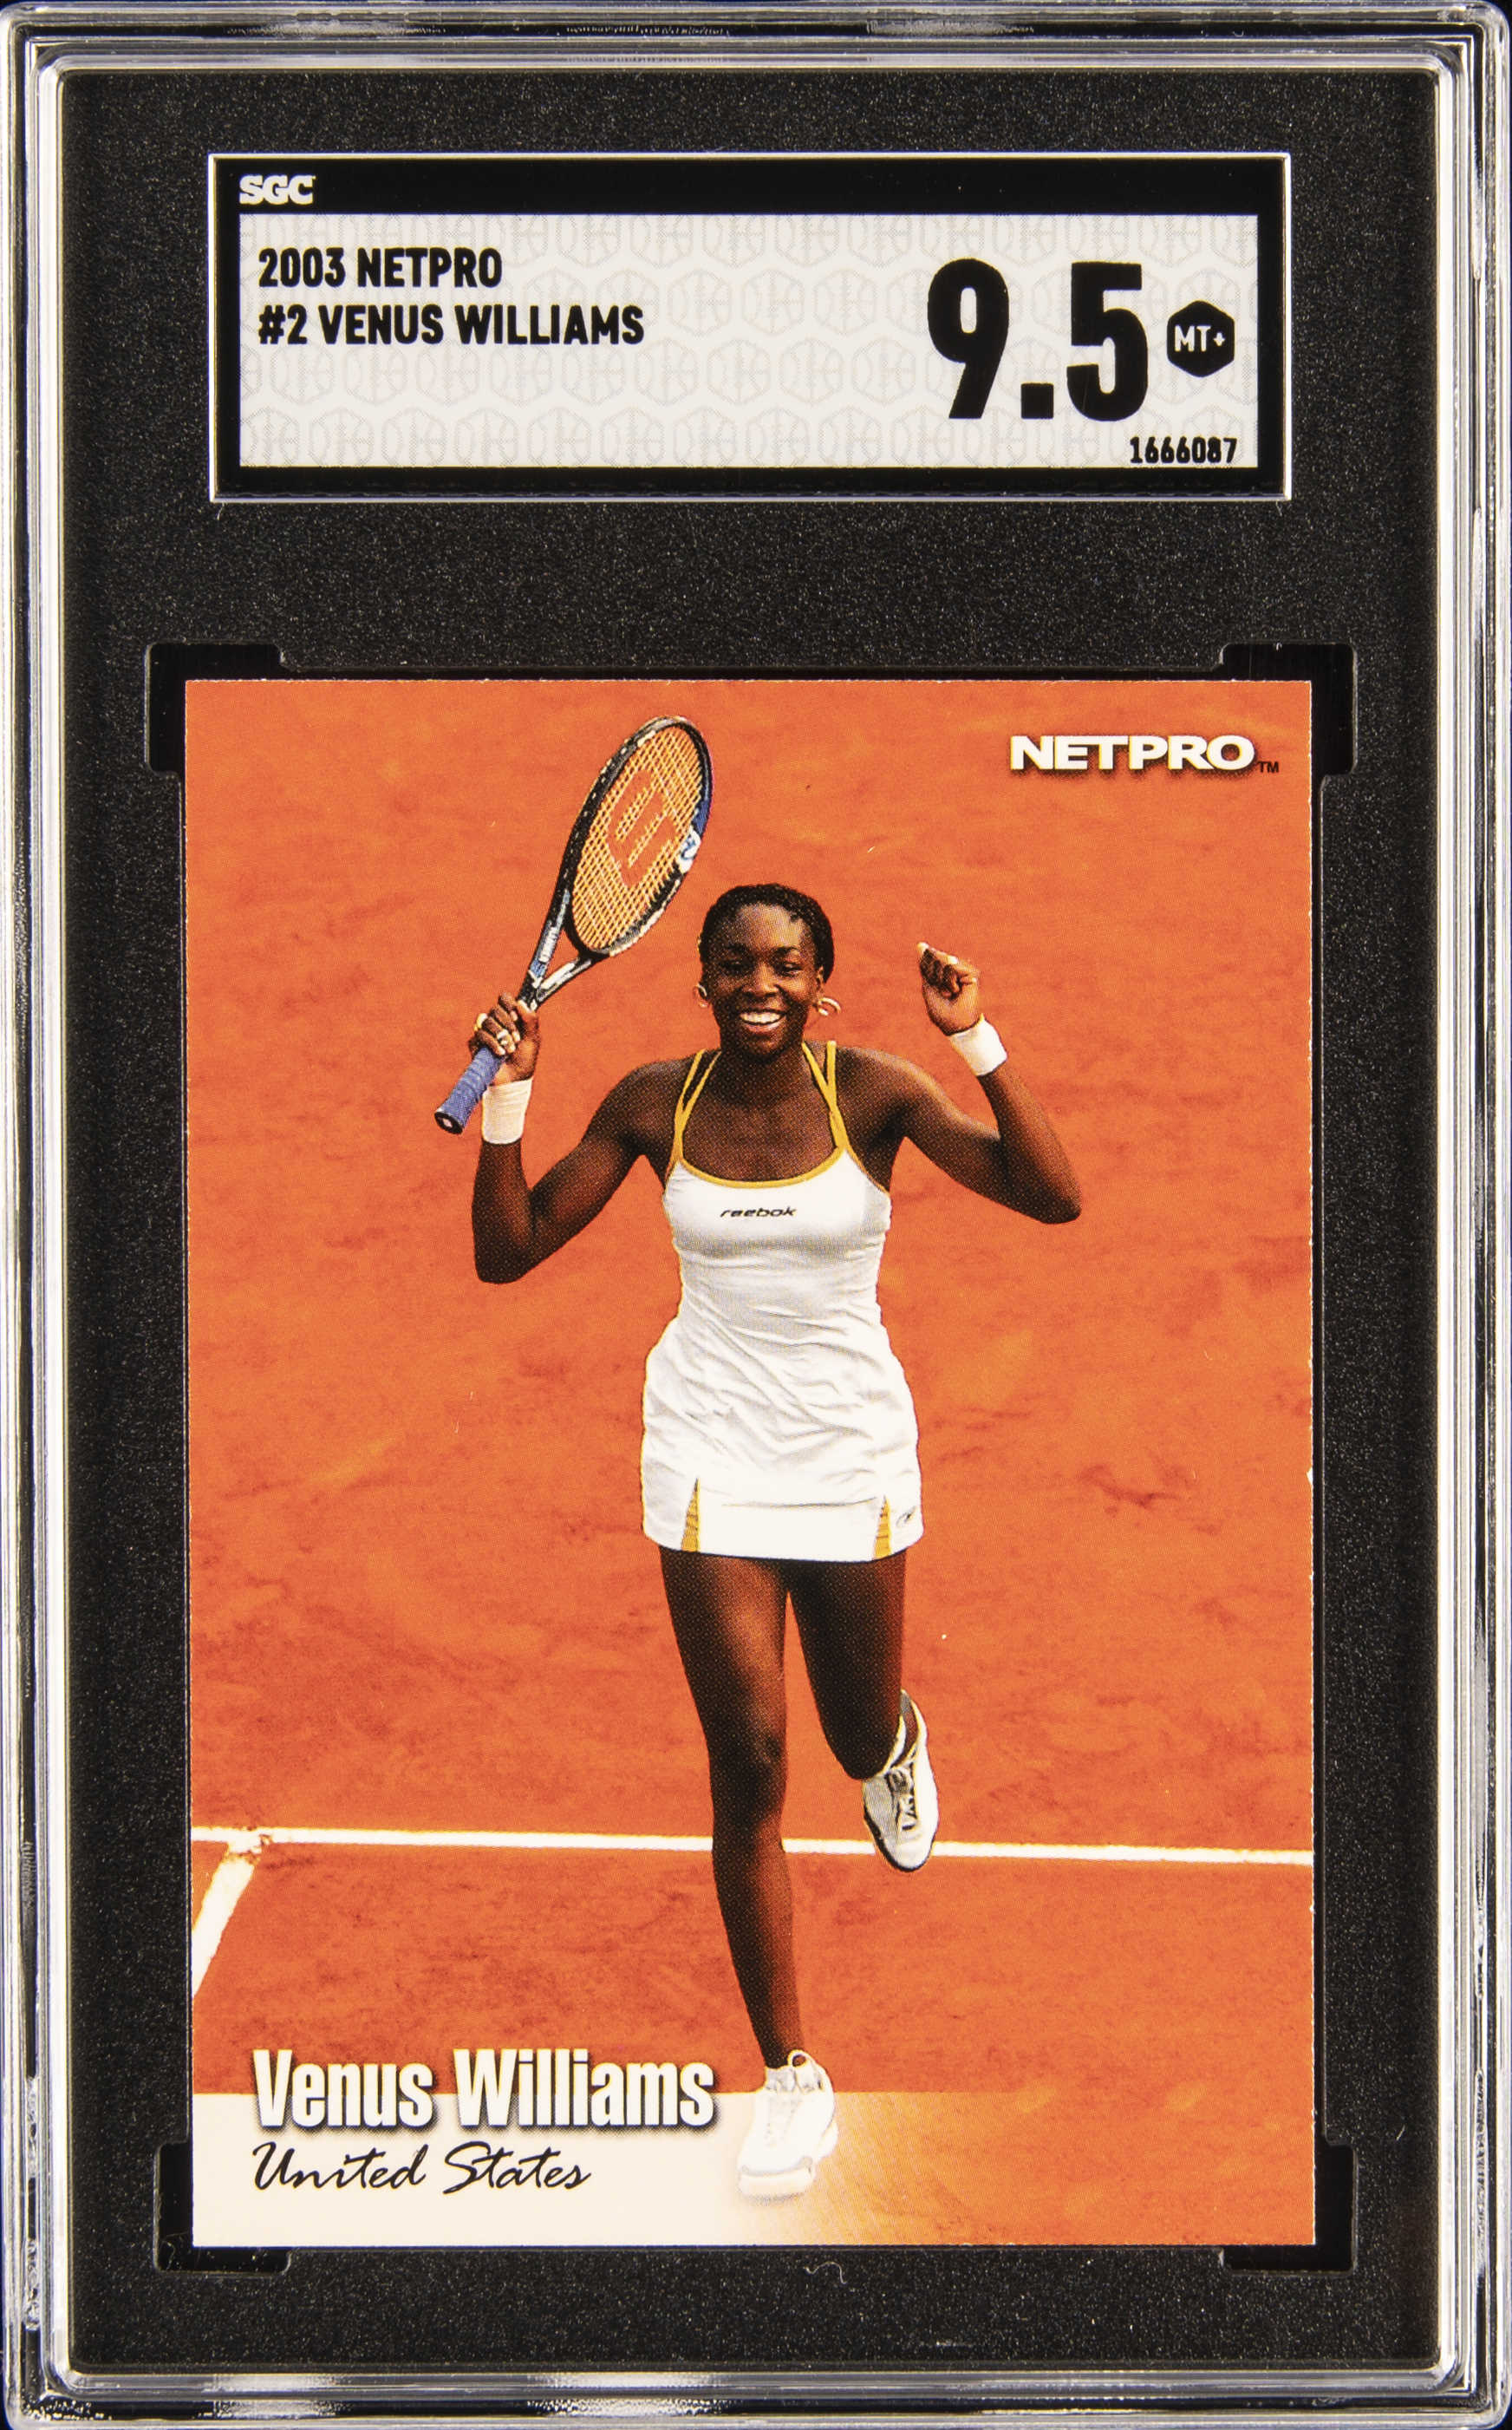 2003 Netpro #2 Venus Williams Rookie Card – SGC MT+ 9.5